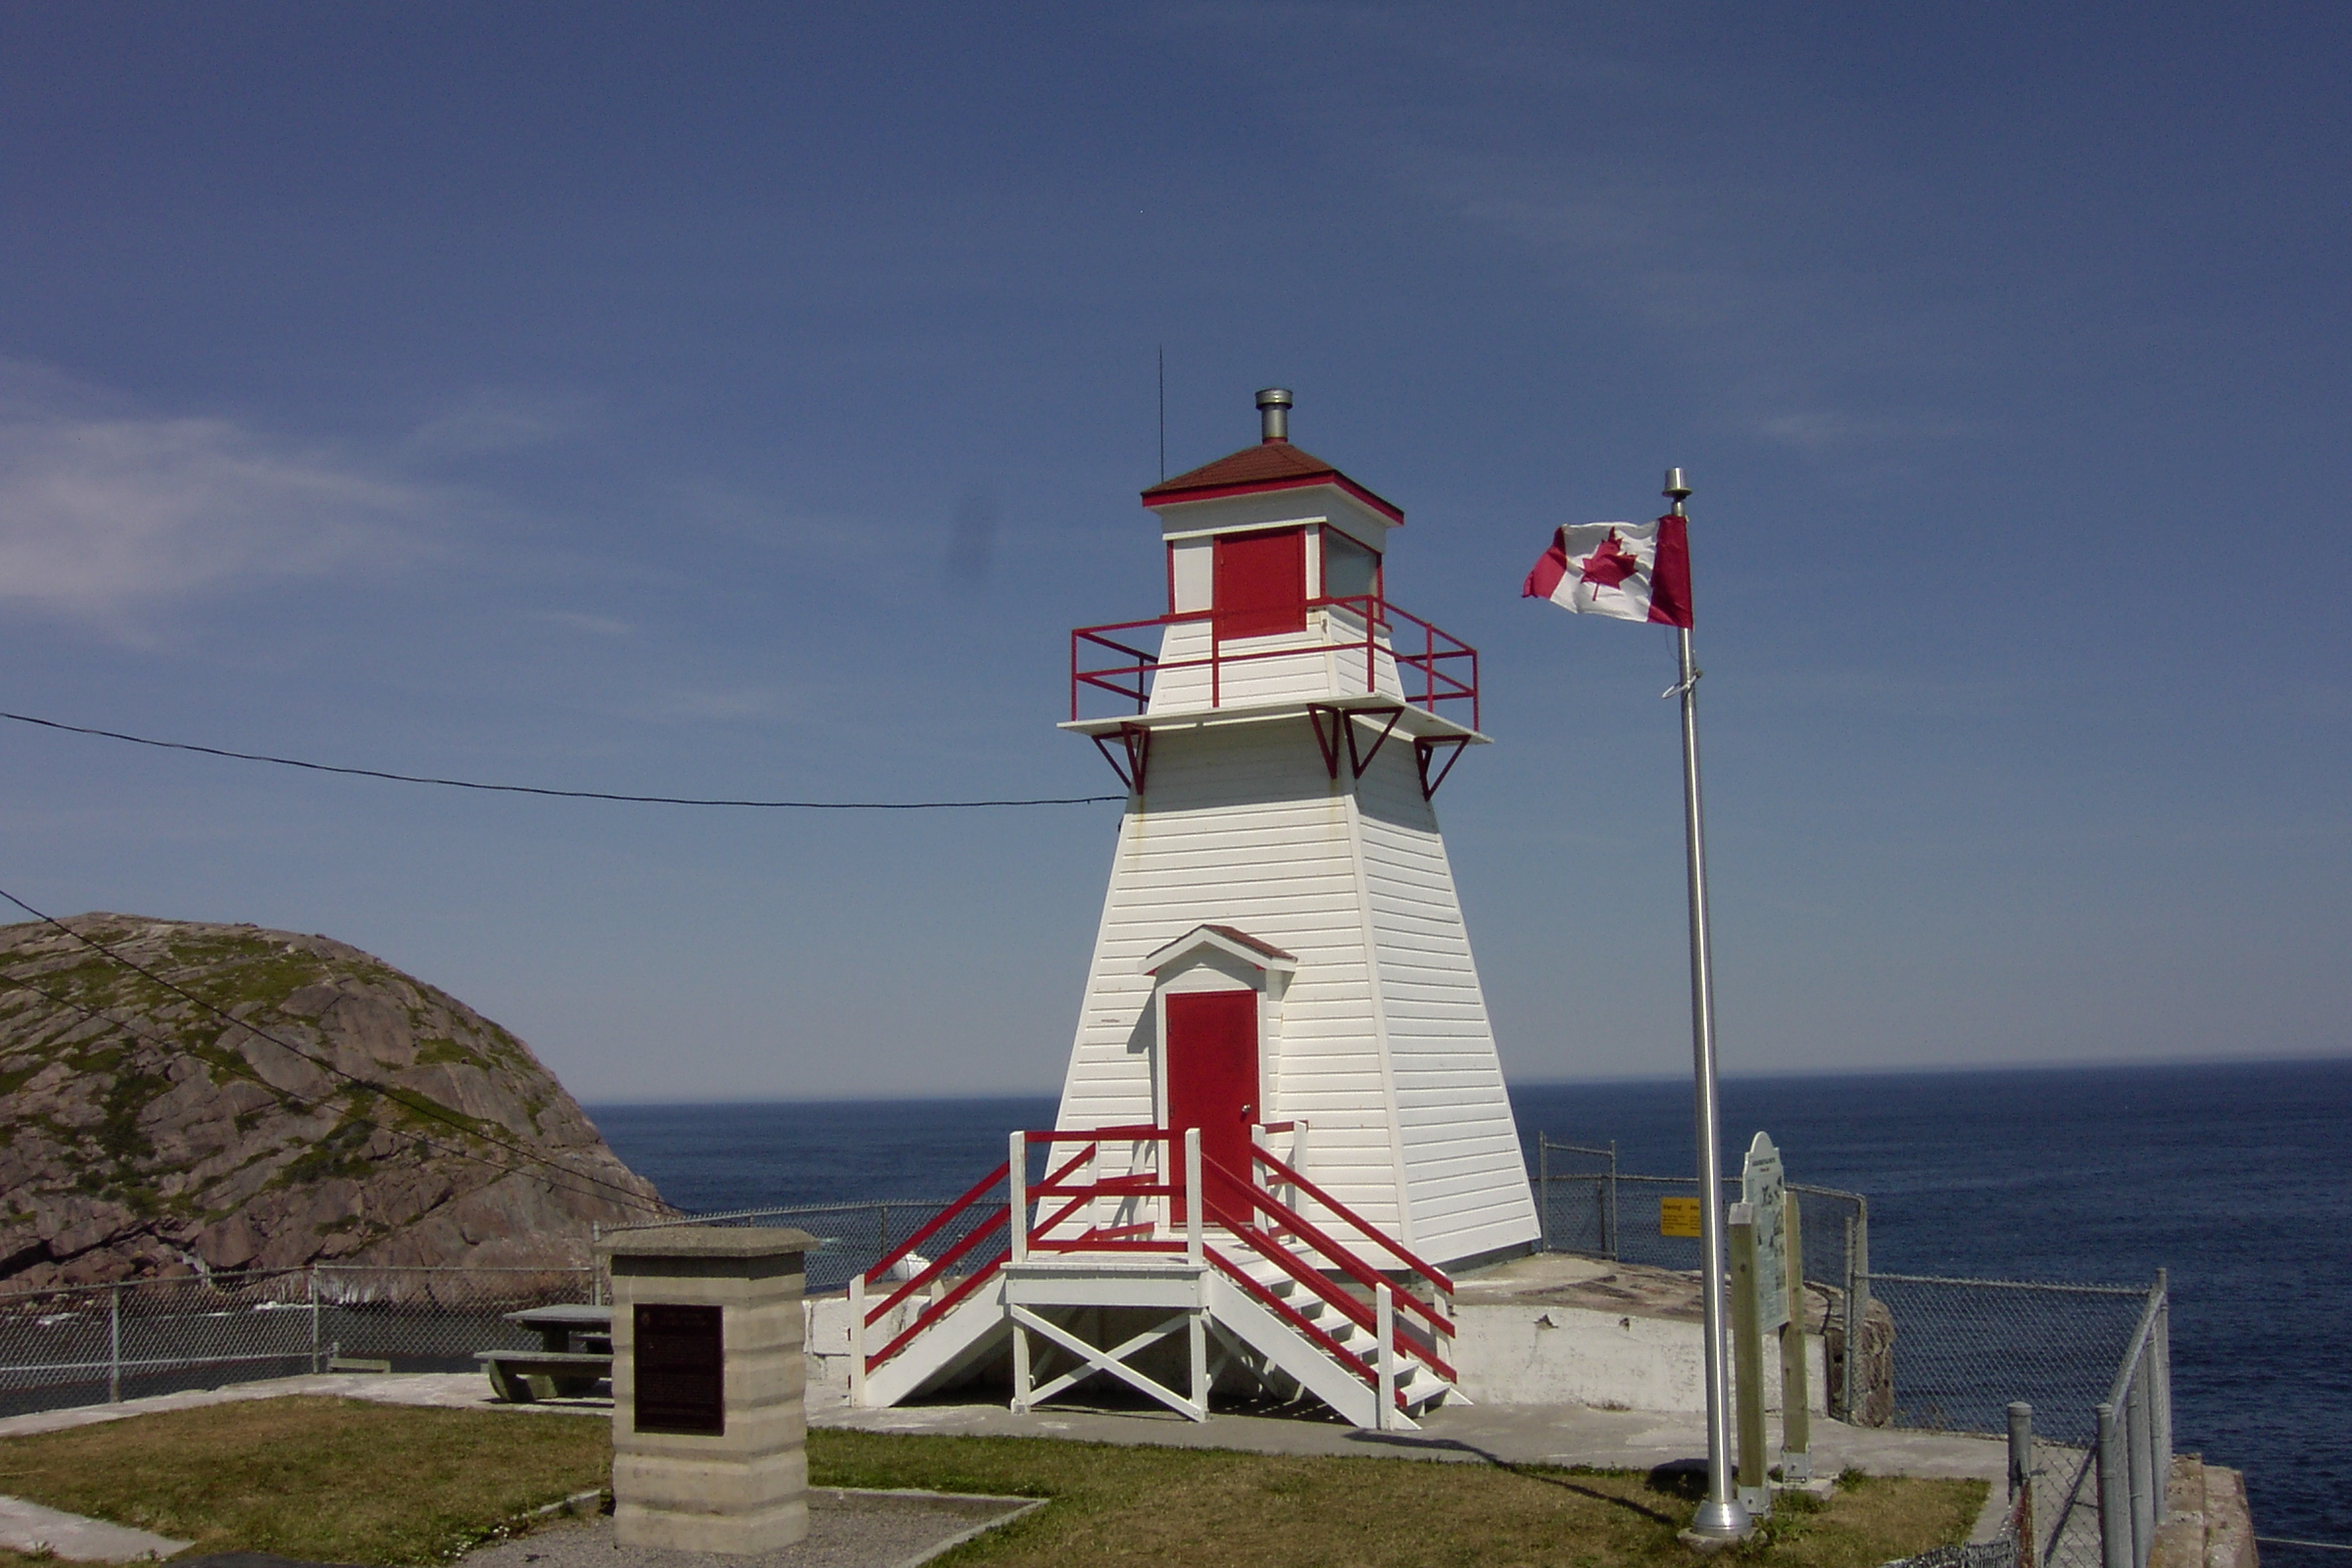 File:Fort Amherst lighthouse, St. John's, NL.jpg - Wikimedia Commons